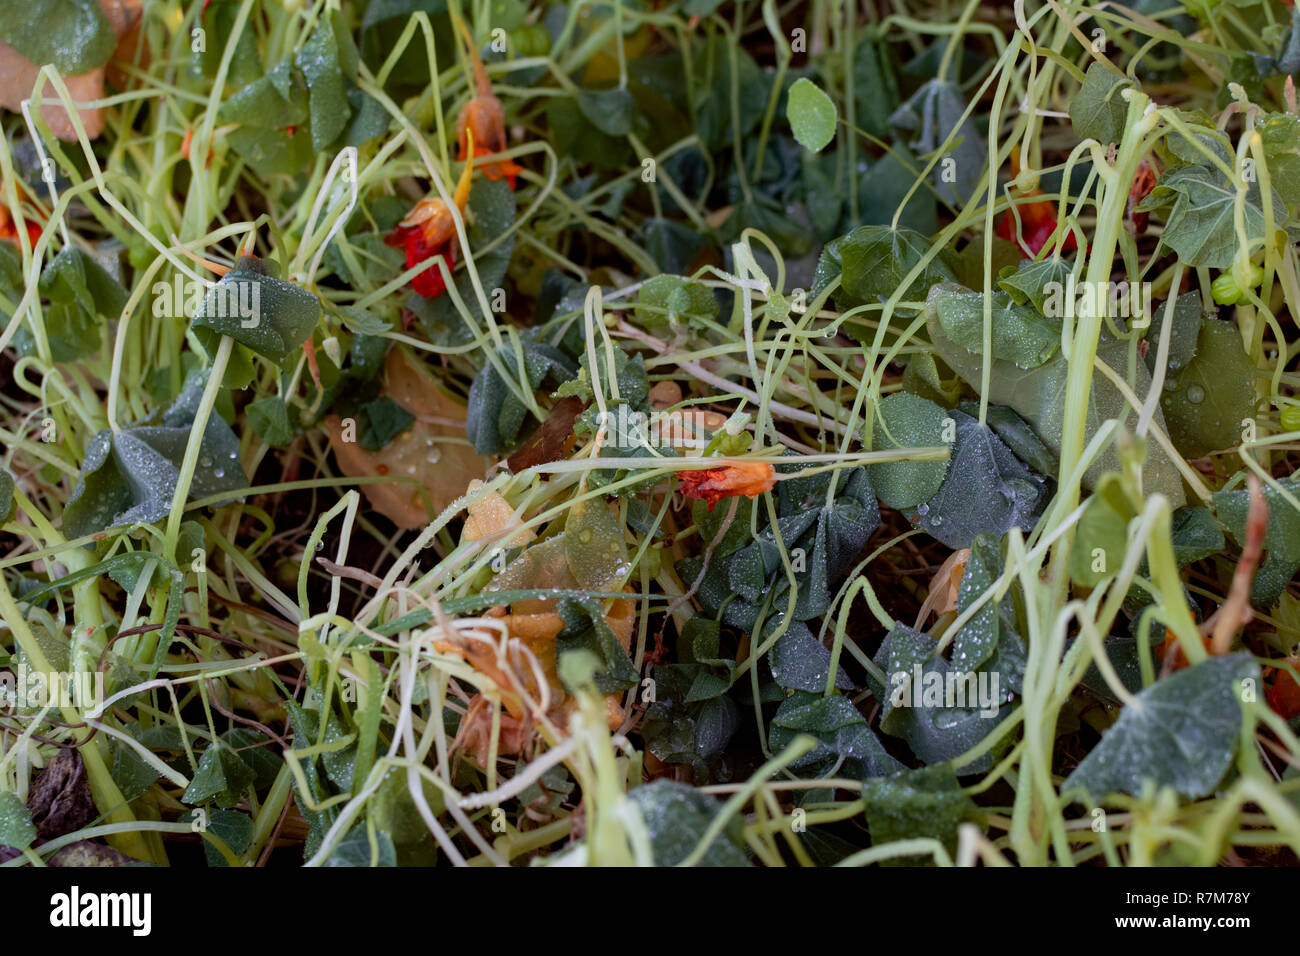 Feuilles et fleurs de capucines tués par le gel en hiver, couverts dans les gouttelettes d'eau Banque D'Images